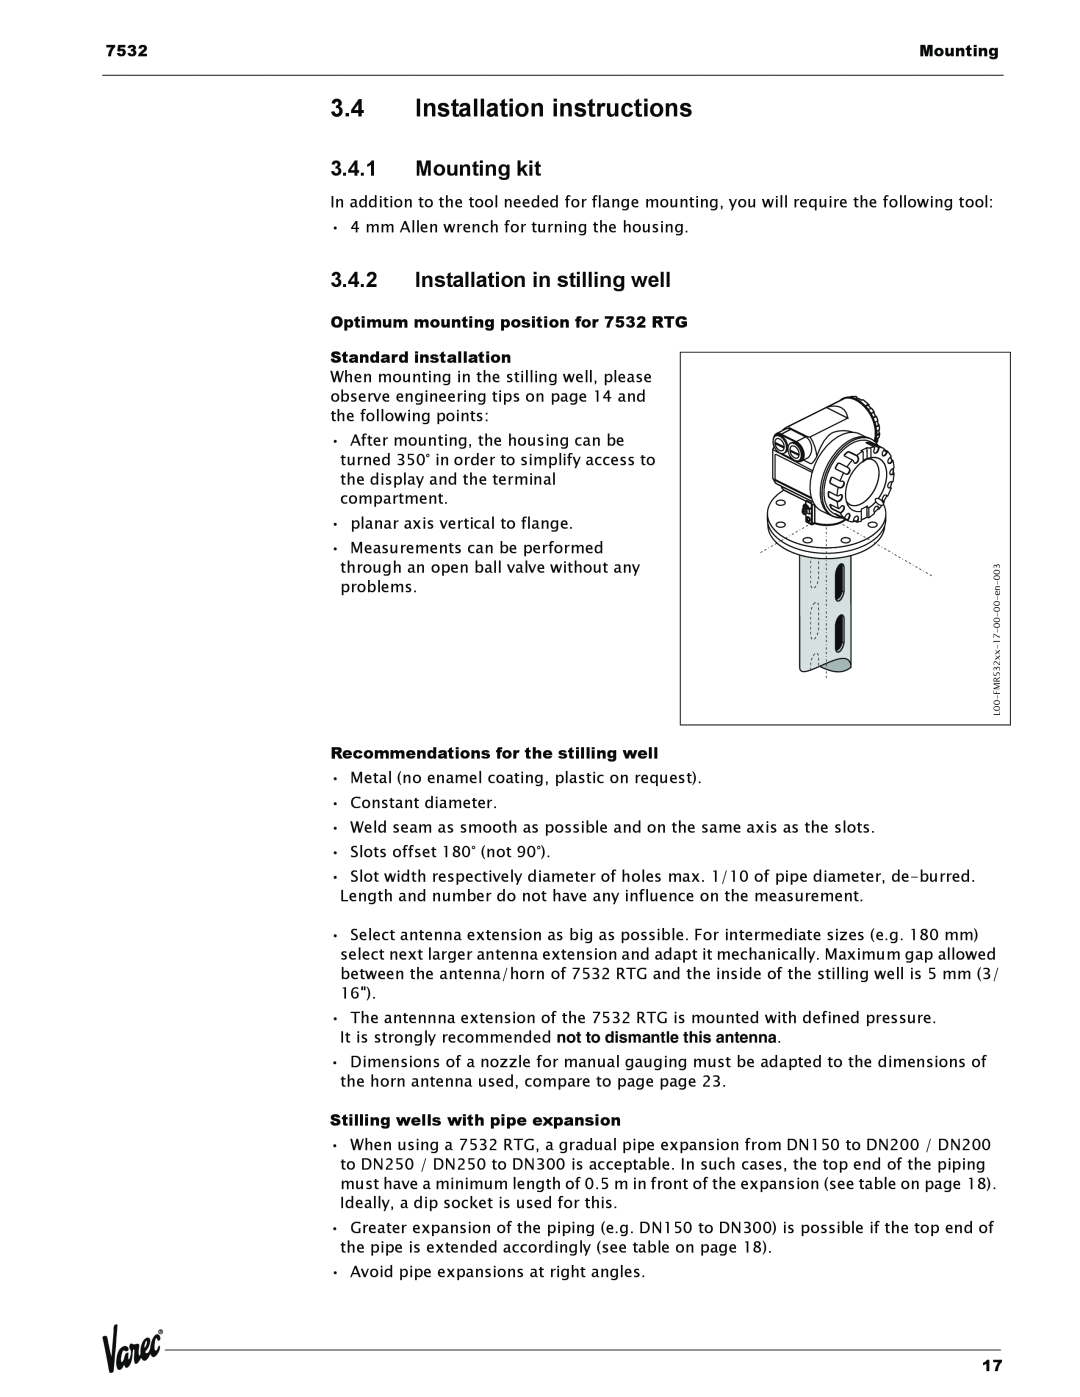 Lightning Audio 7532 manual 3.4Installation instructions, 3.4.1Mounting kit, 3.4.2Installation in stilling well 